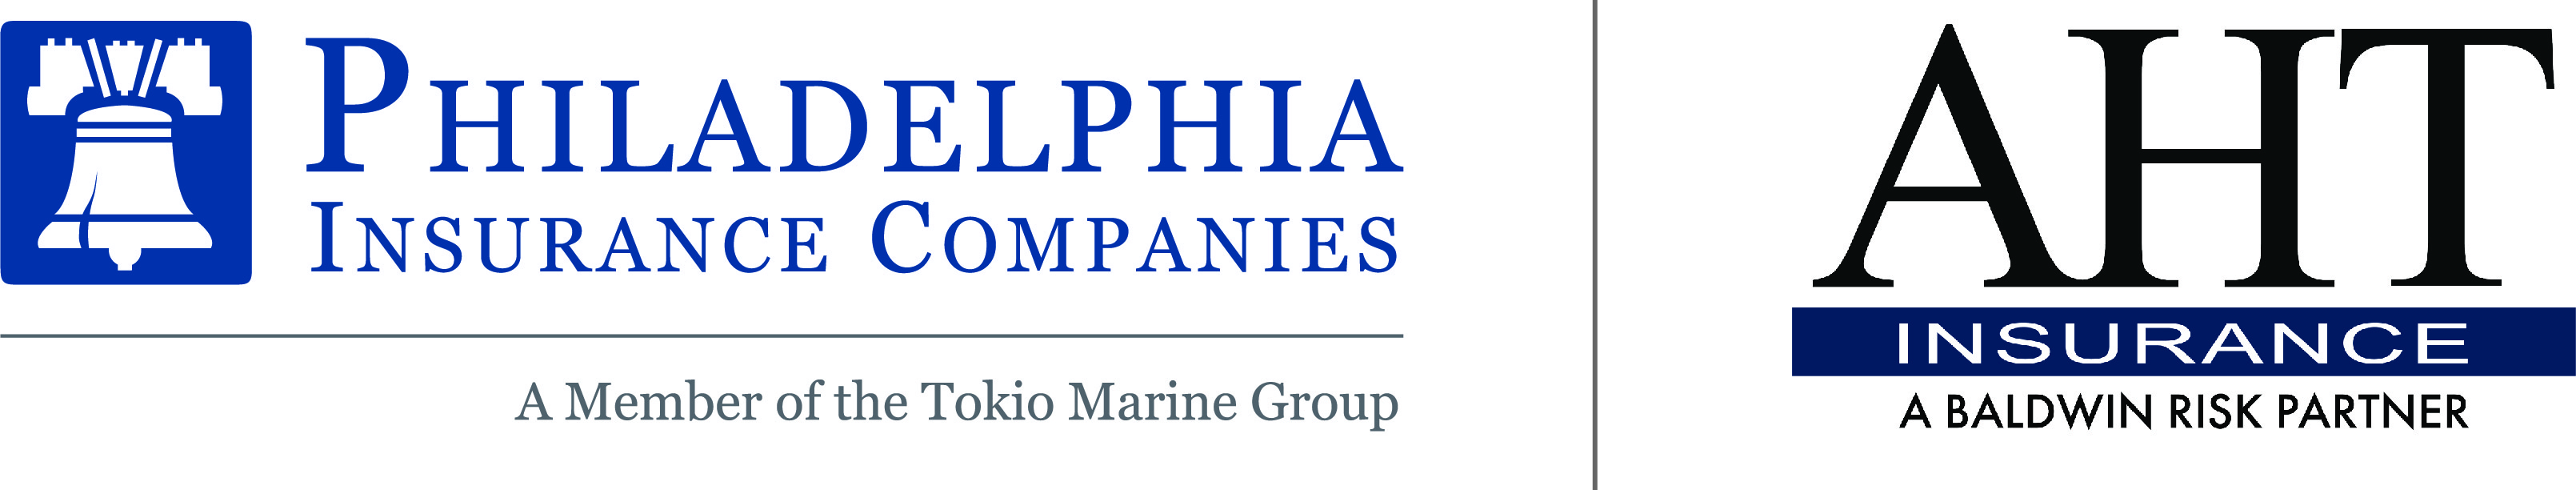 Philadelphia Insurance/AHT Logo